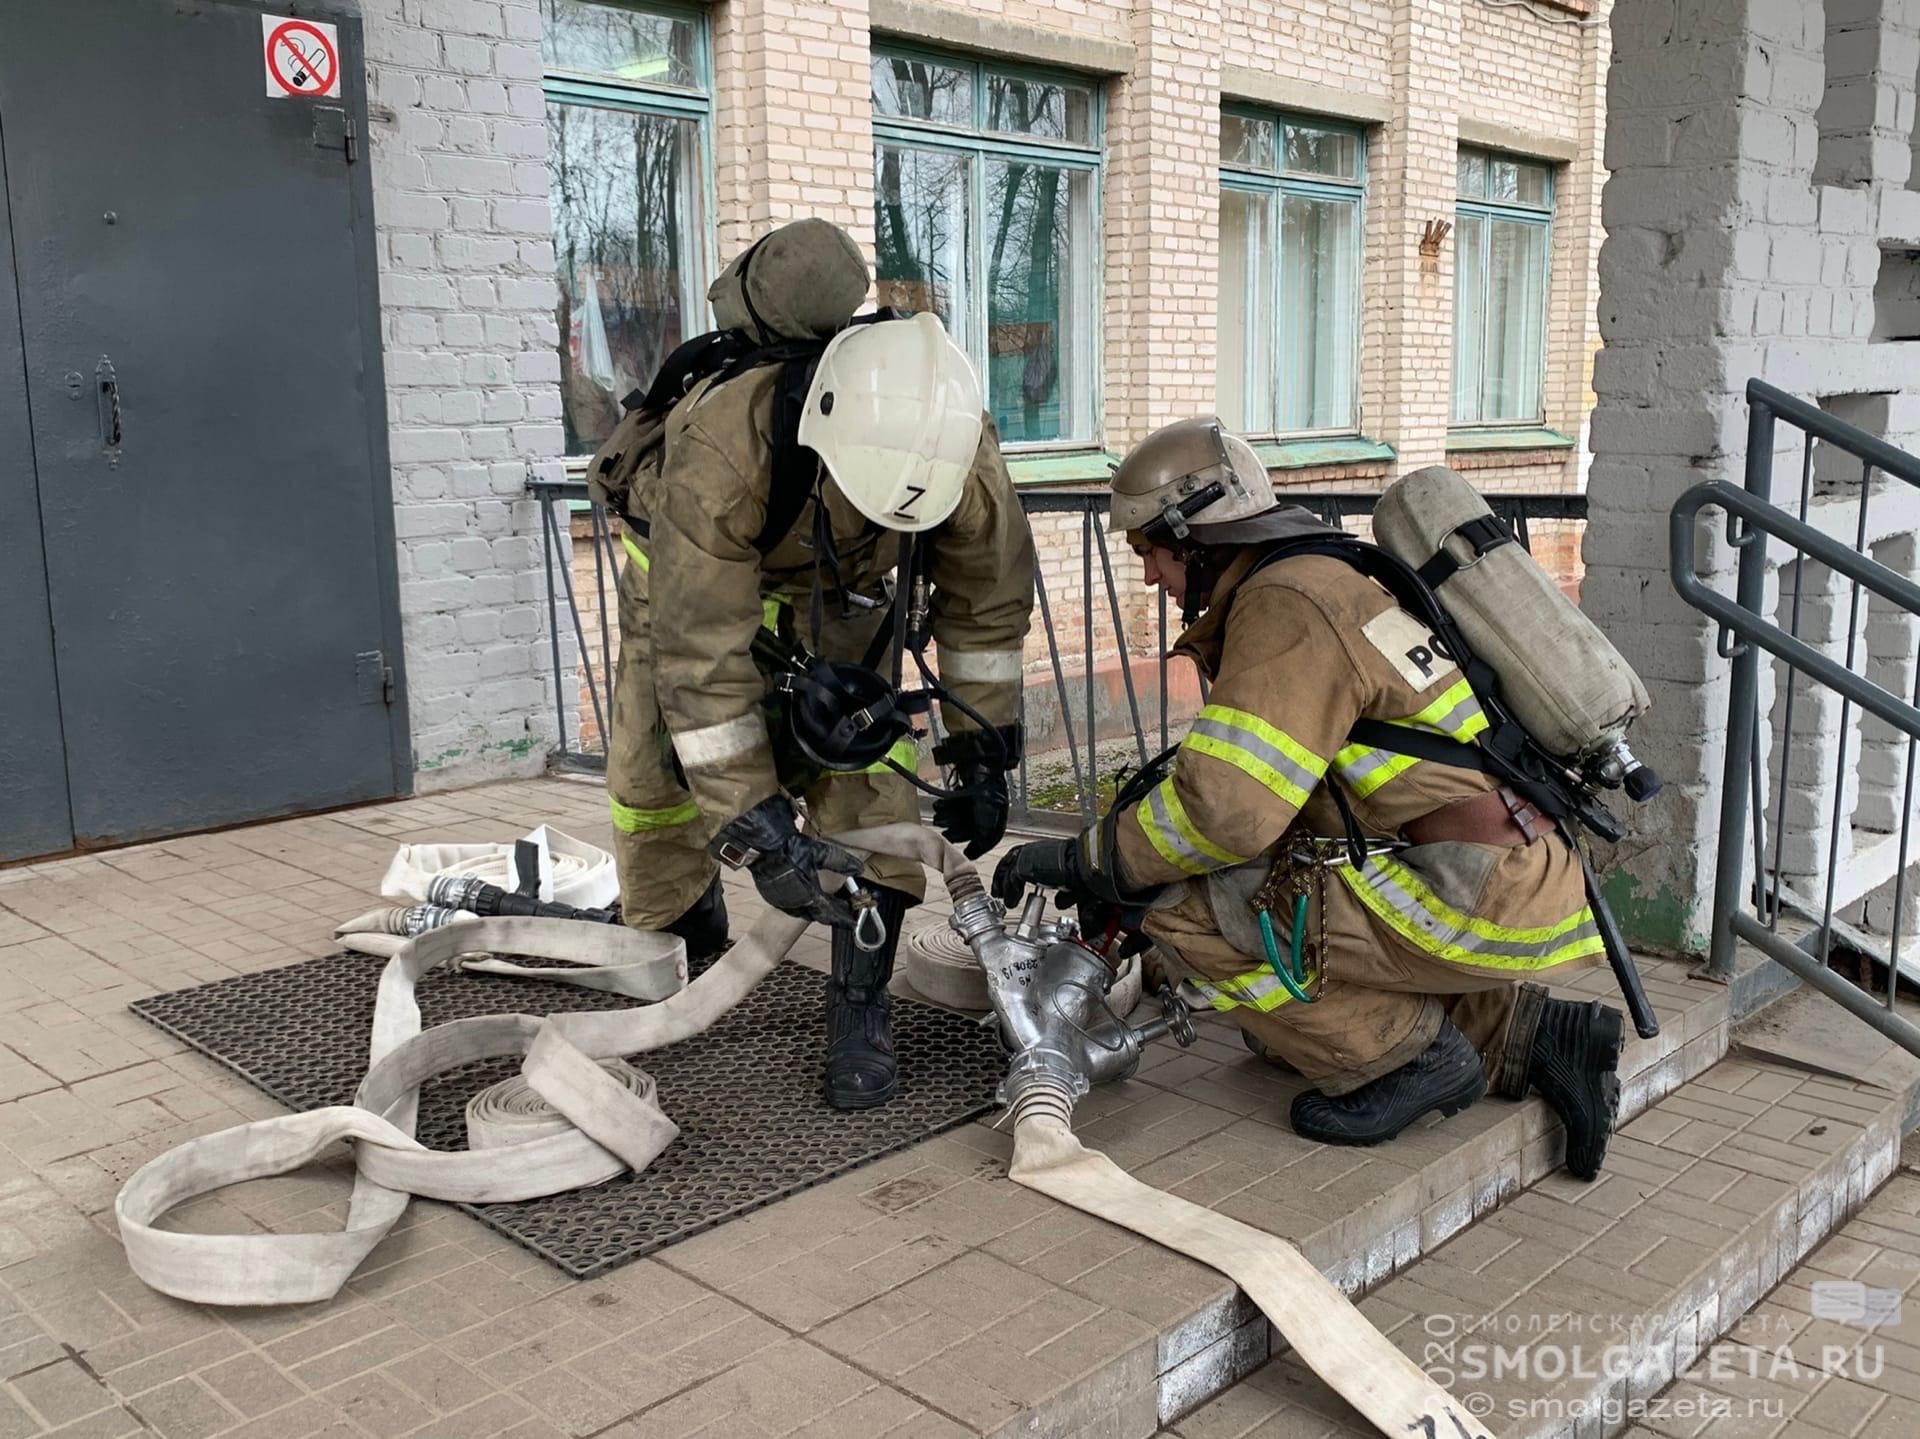 641 подразделение добровольной пожарной охраны действует на территории Смоленской области